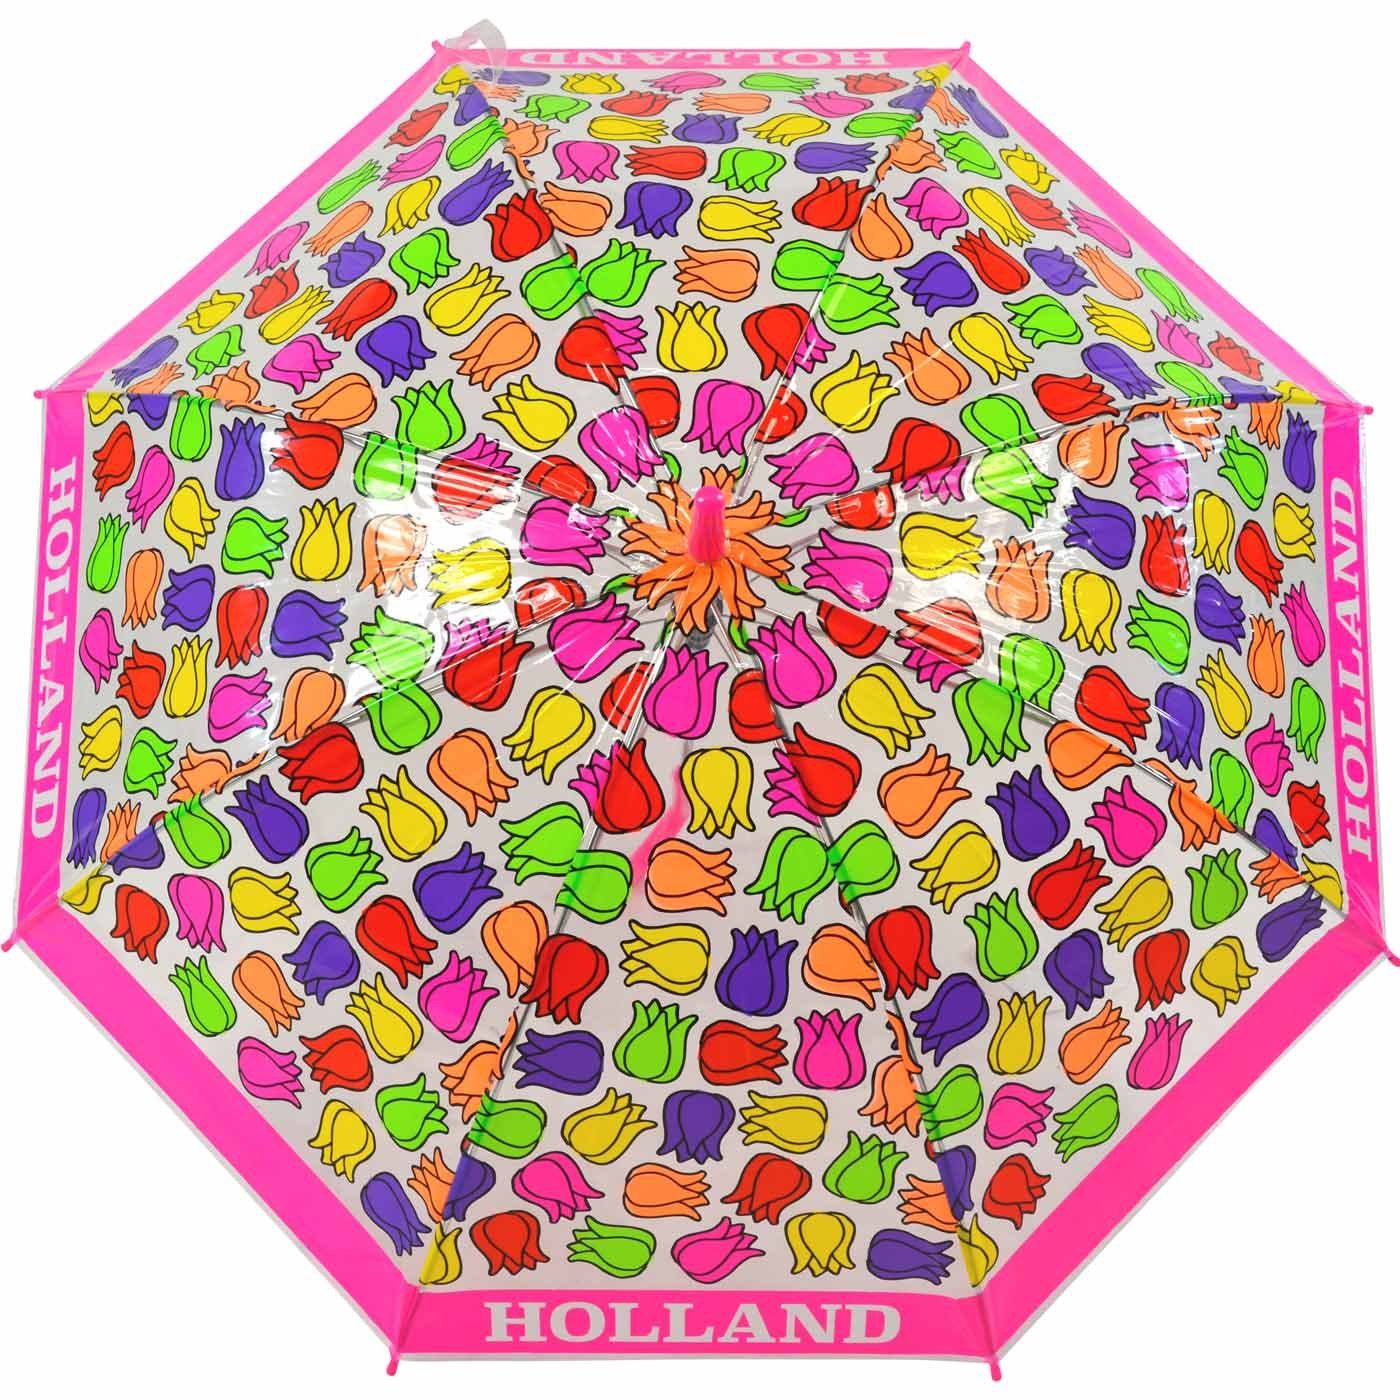 Tulpen, Falconetti bunt transparent durchsichtig Langregenschirm pink Impliva - Kinderschirm